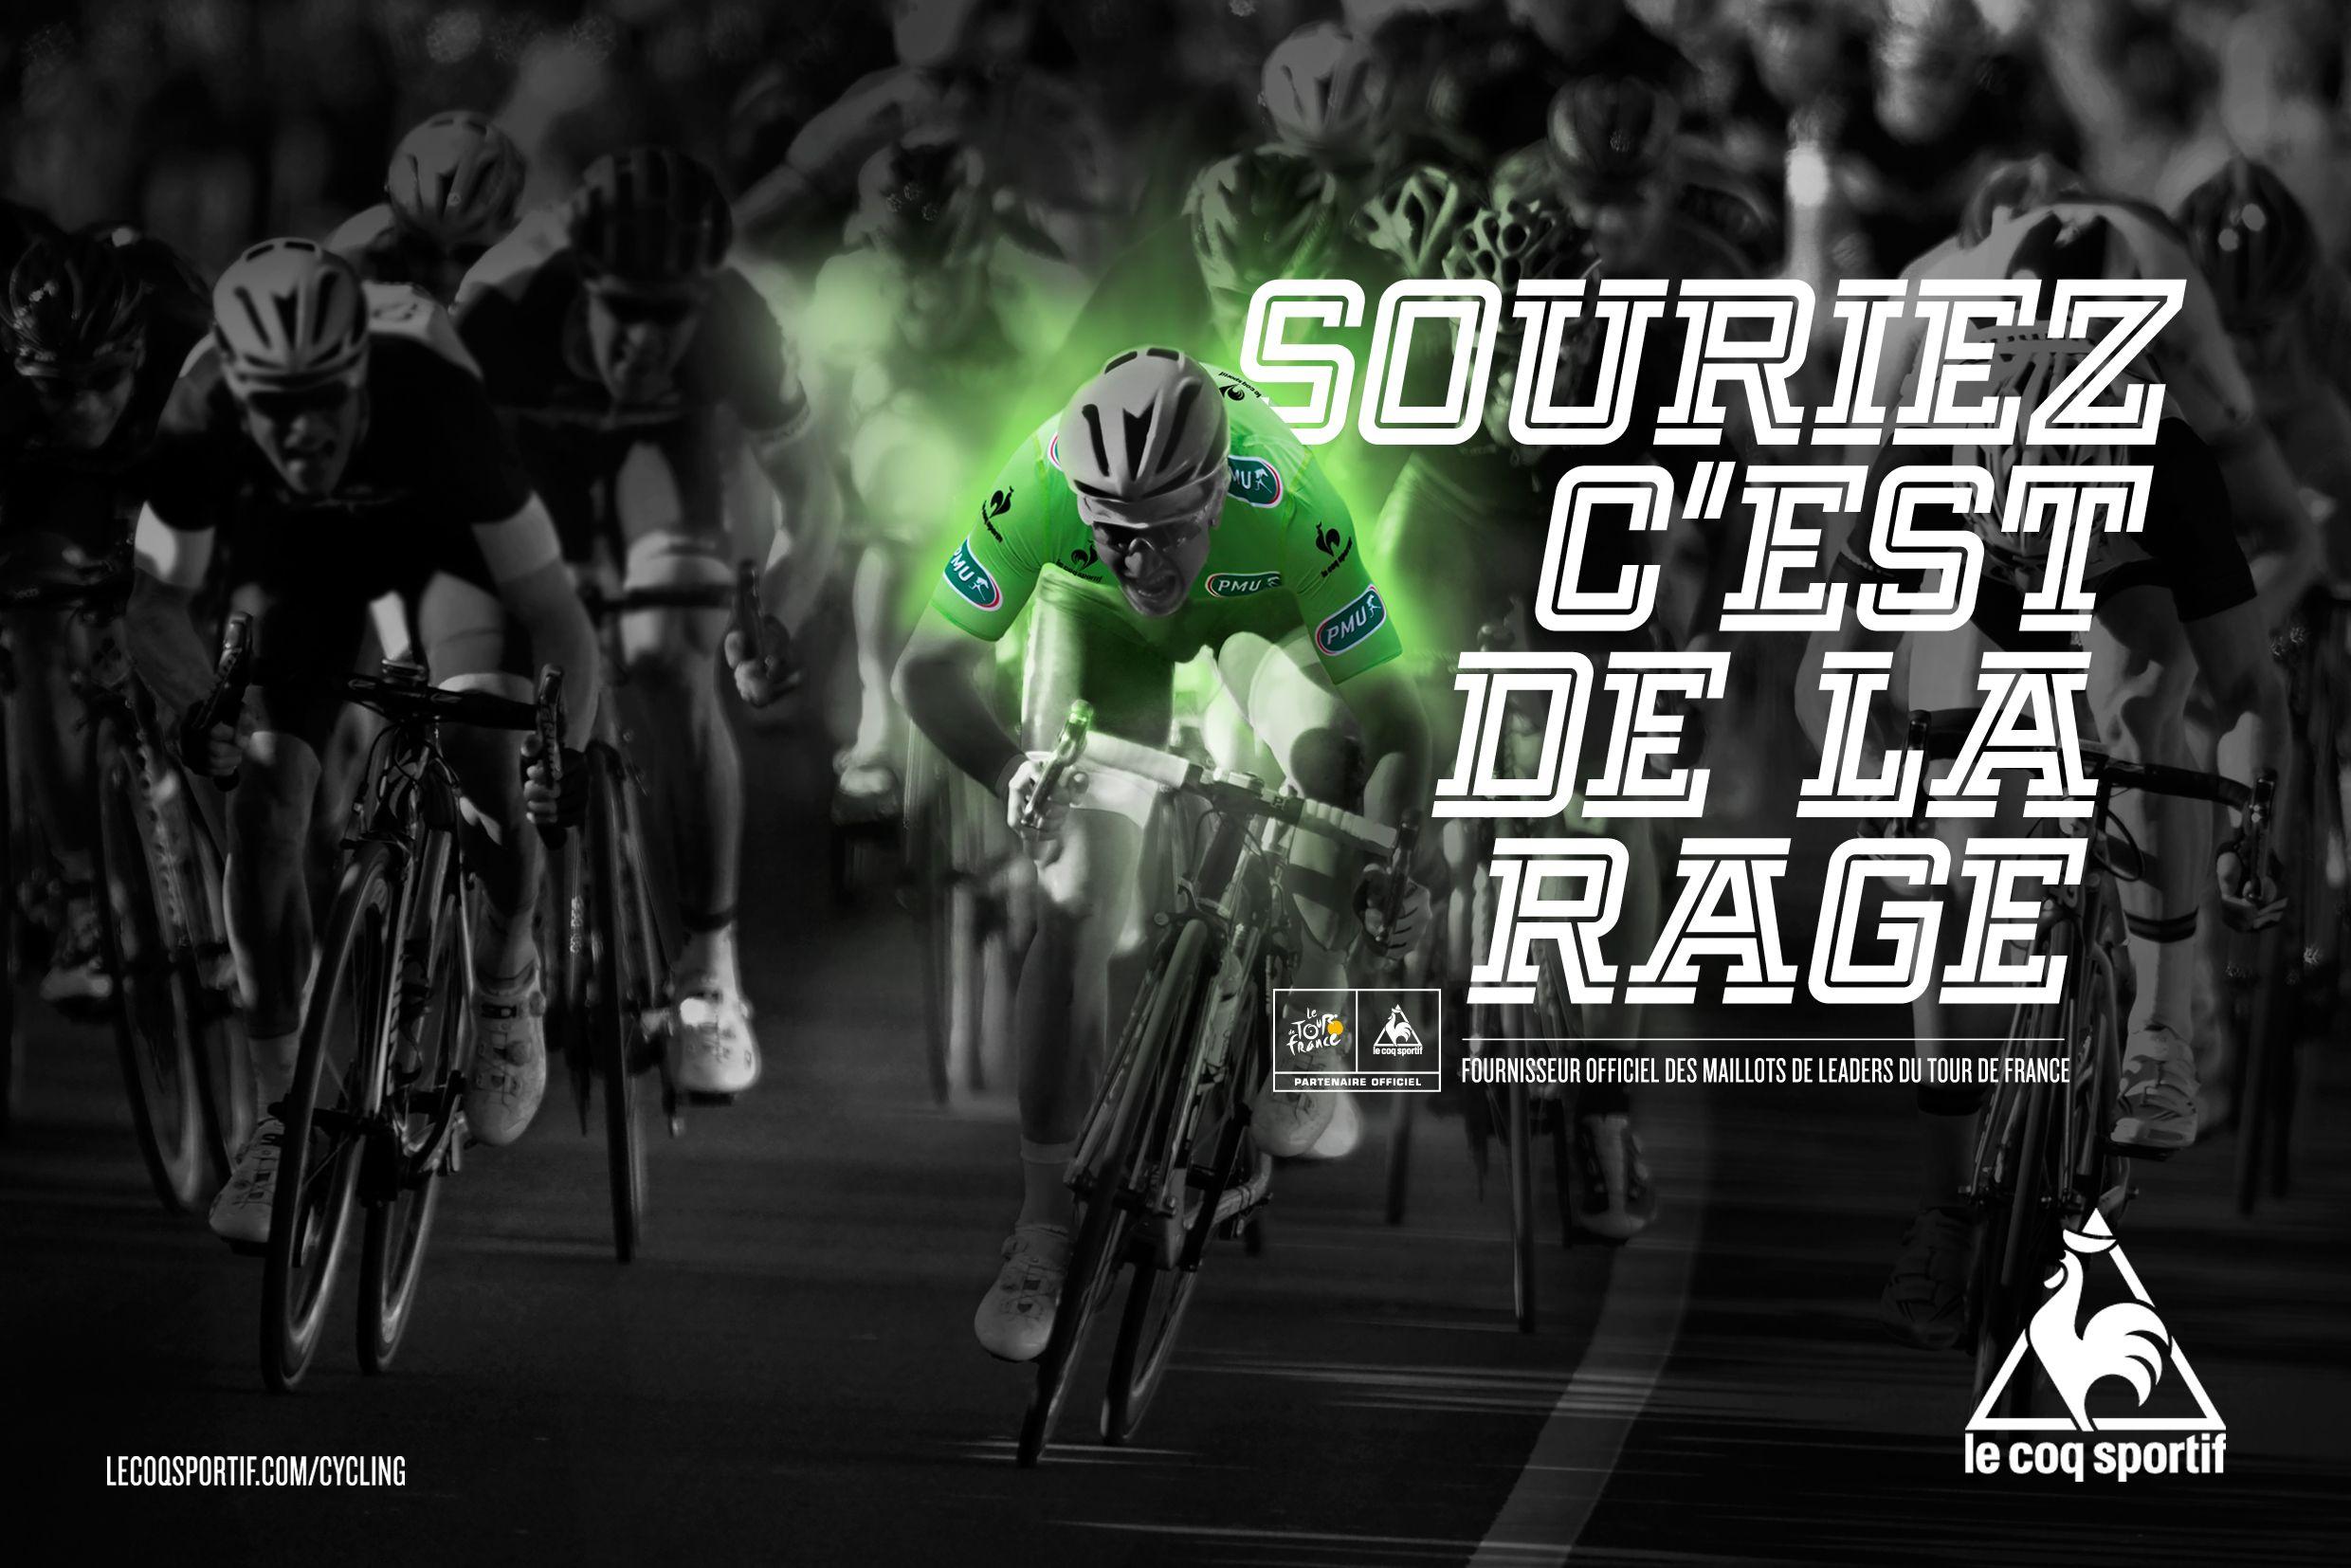 Tour de France wallpaper image fond ecran